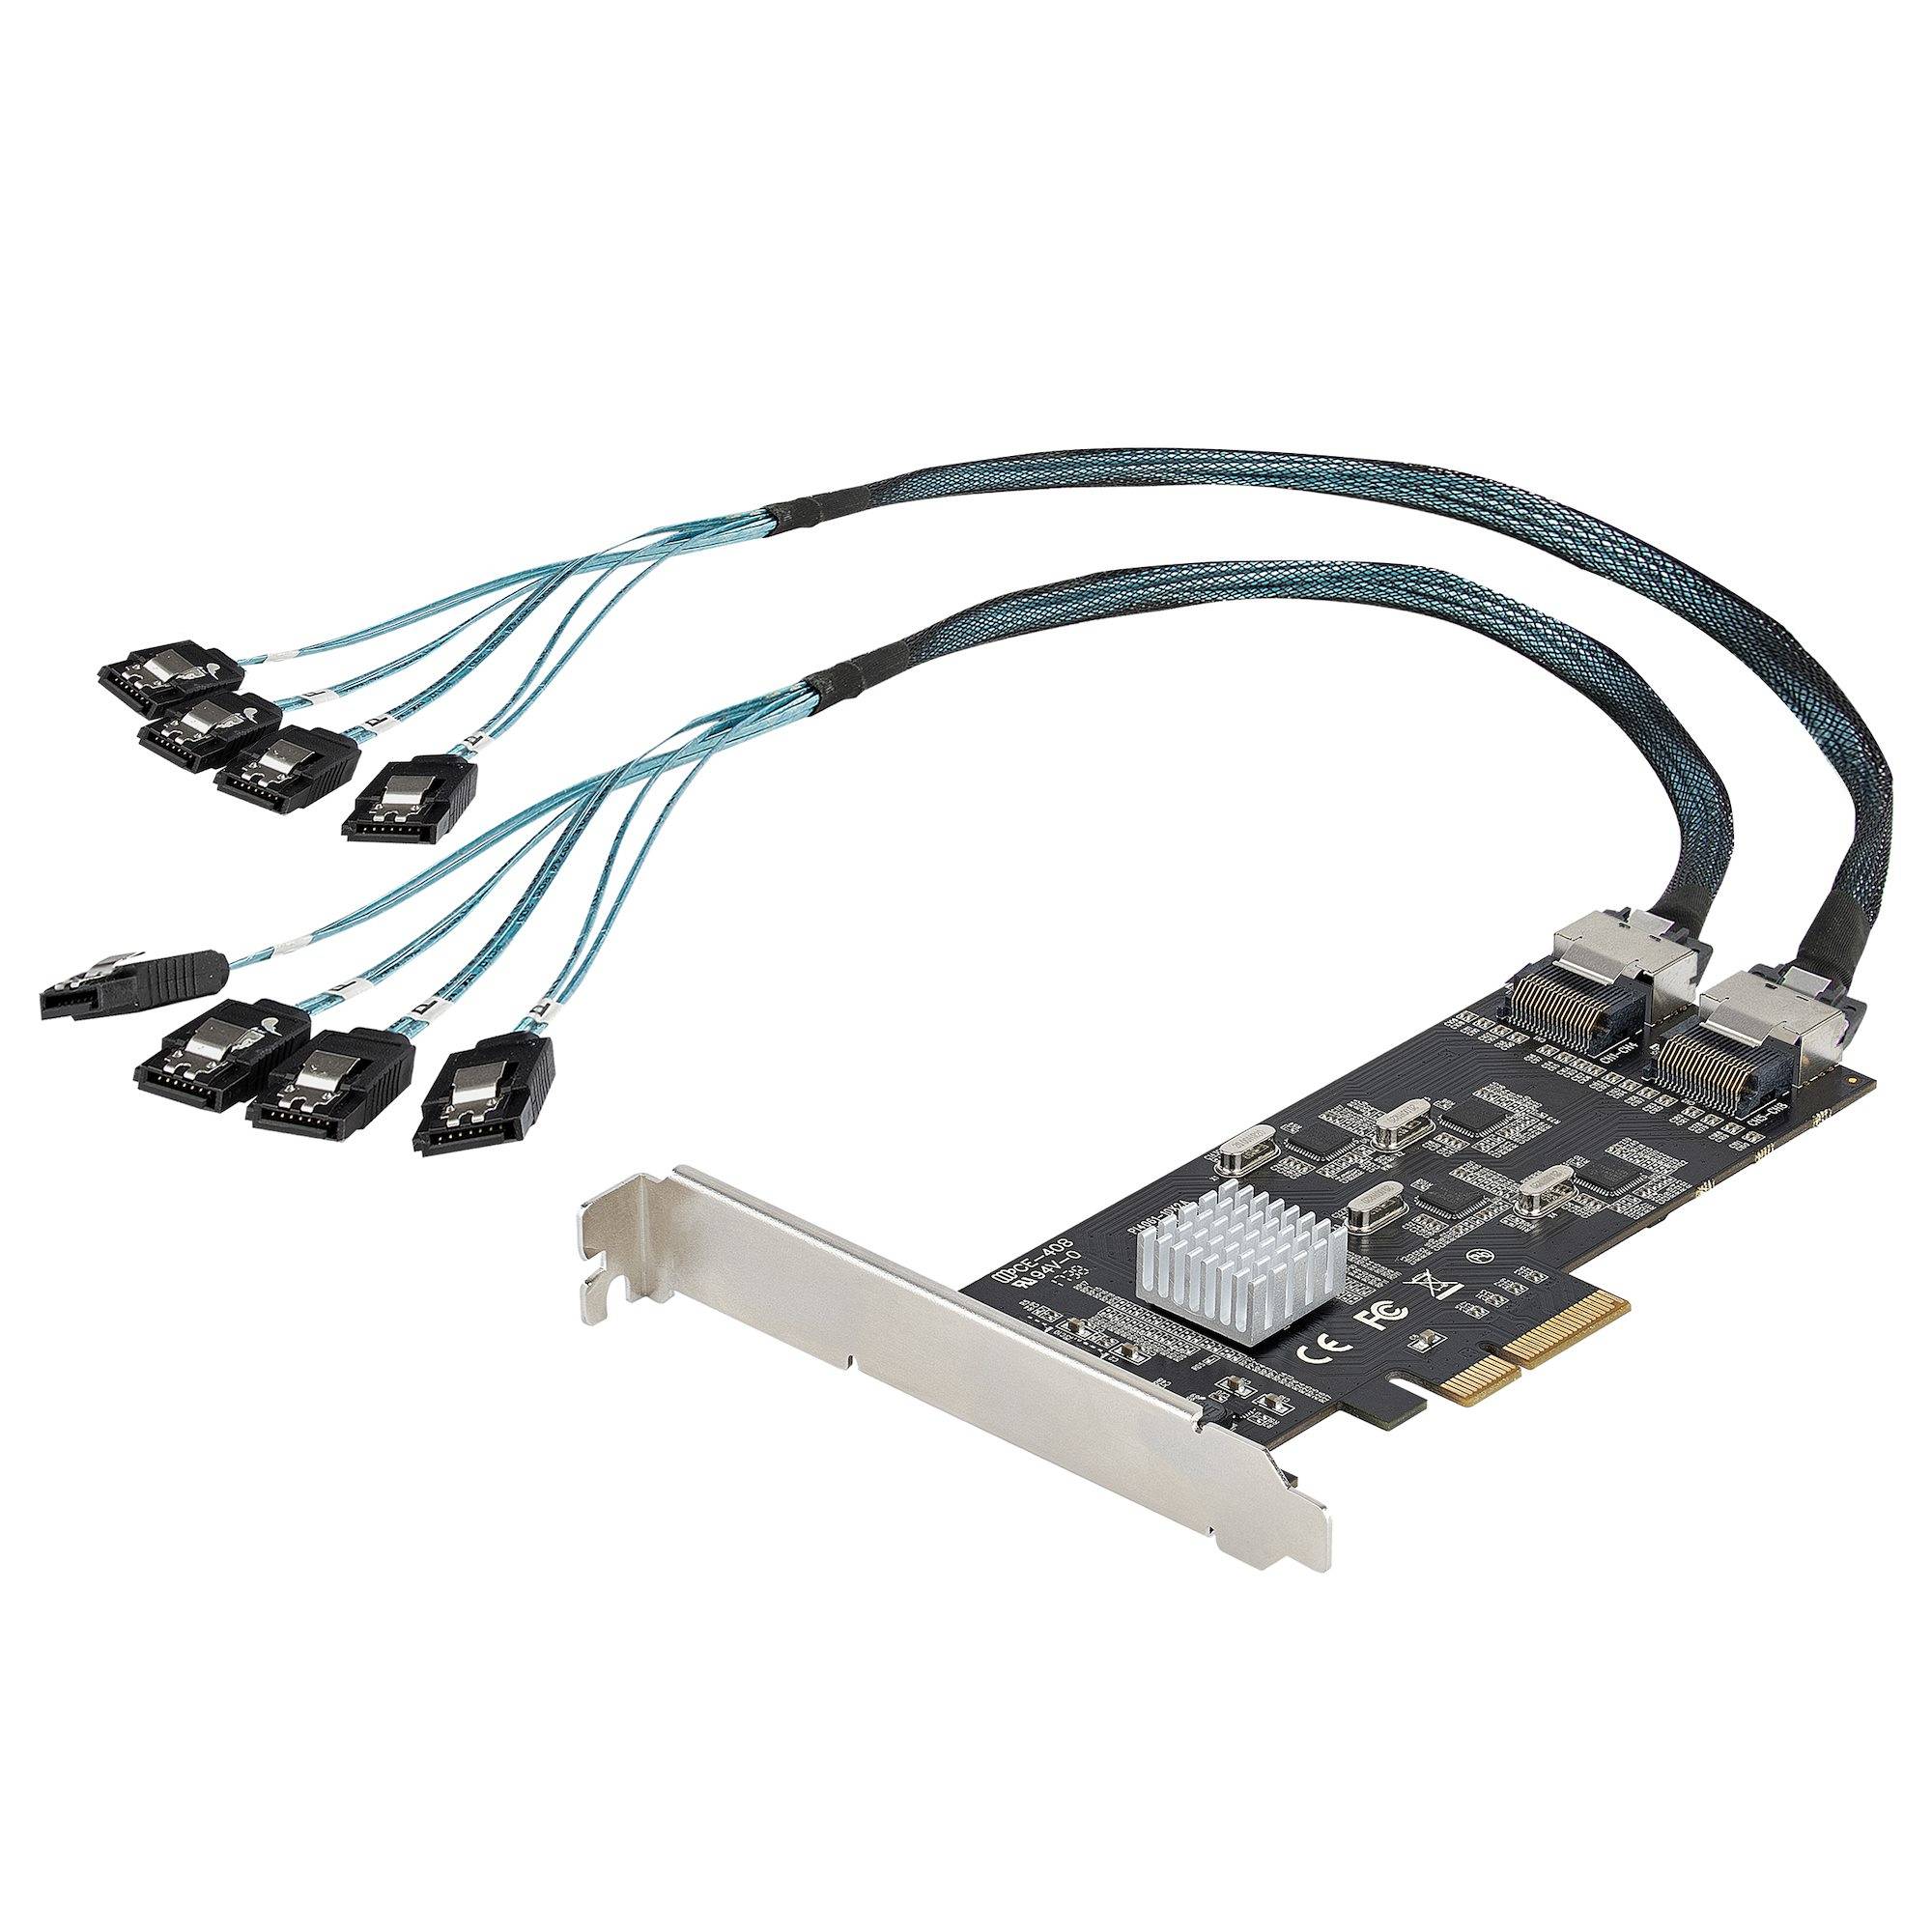 Rca Informatique - Image du produit : CARTE CONTROLEUR SATA PCIE 8 PORTS - PCIE X4 SATA III 6GBPS